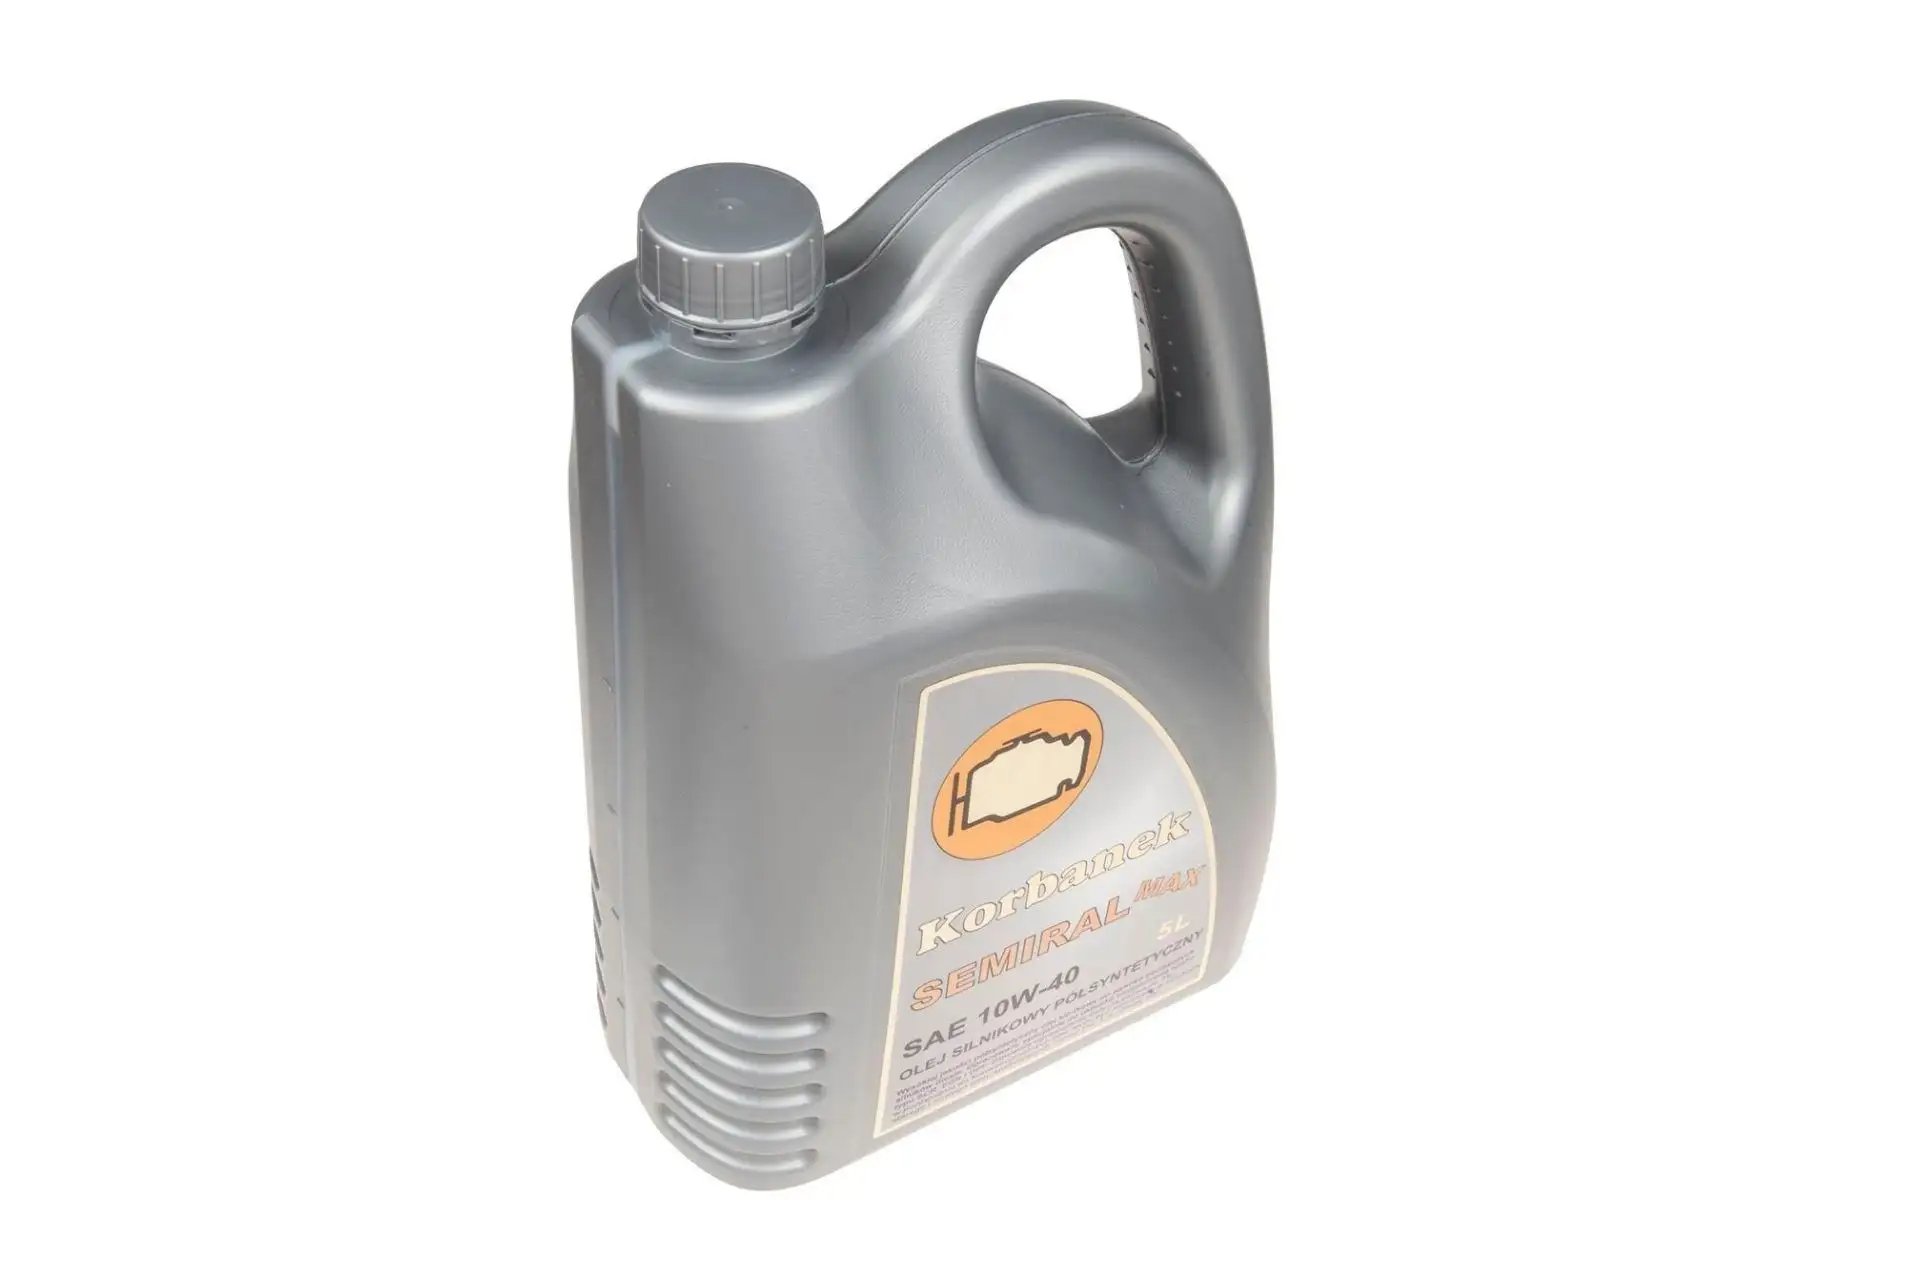 Semiral Max olej silnikowy półsyntetyczny 10w40  5l dla wysoko obciążonych silników wysokprężnych.Posiada rekomendacje największych producentów maszyn rolniczych